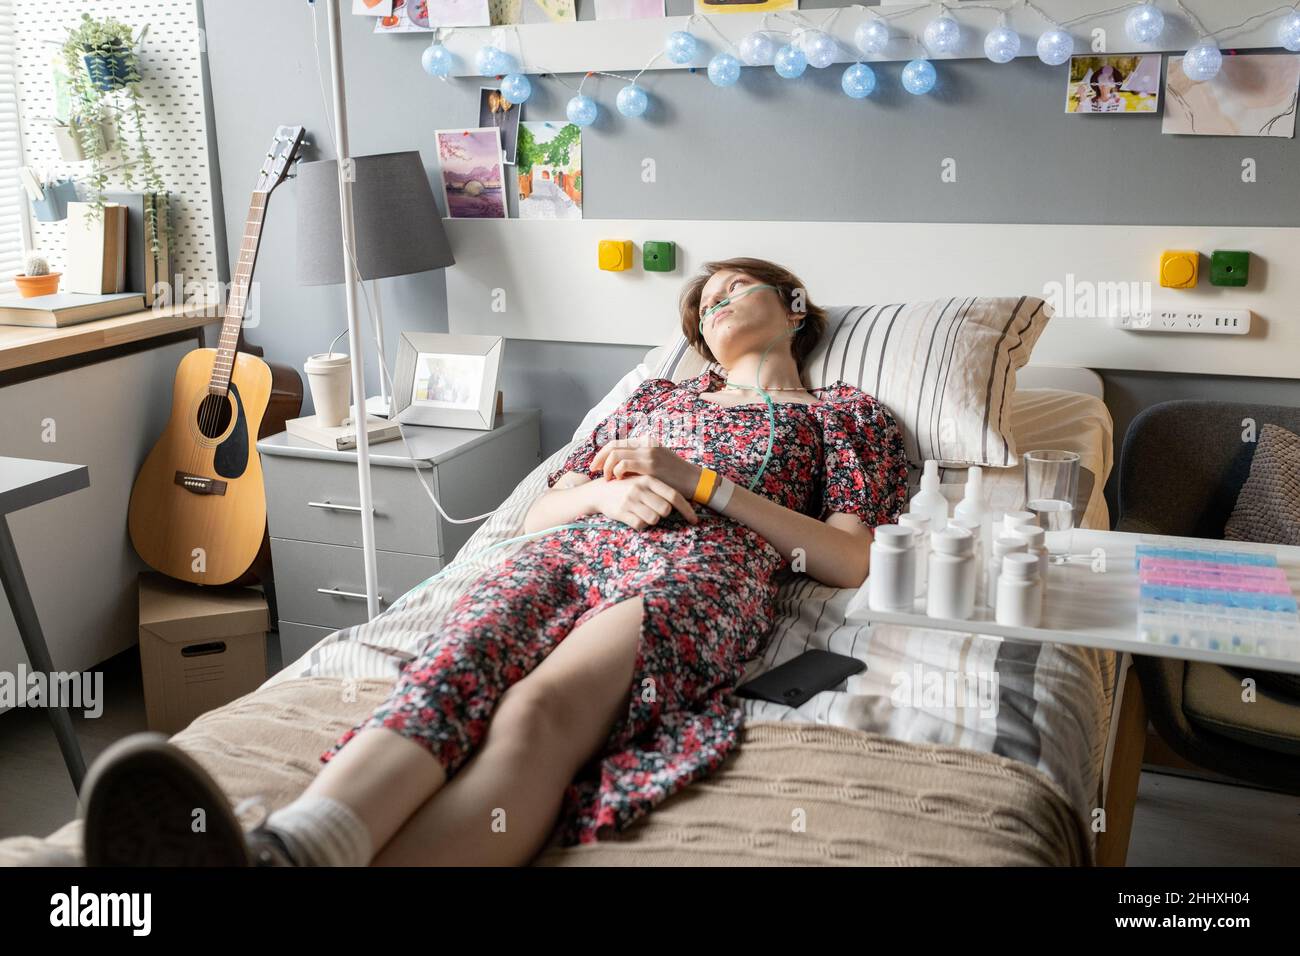 Adolescente tranquille avec un tuyau d'oxygène dans son nez ayant une procédure médicale tout en étant couché sur le lit dans la salle d'hôpital Banque D'Images